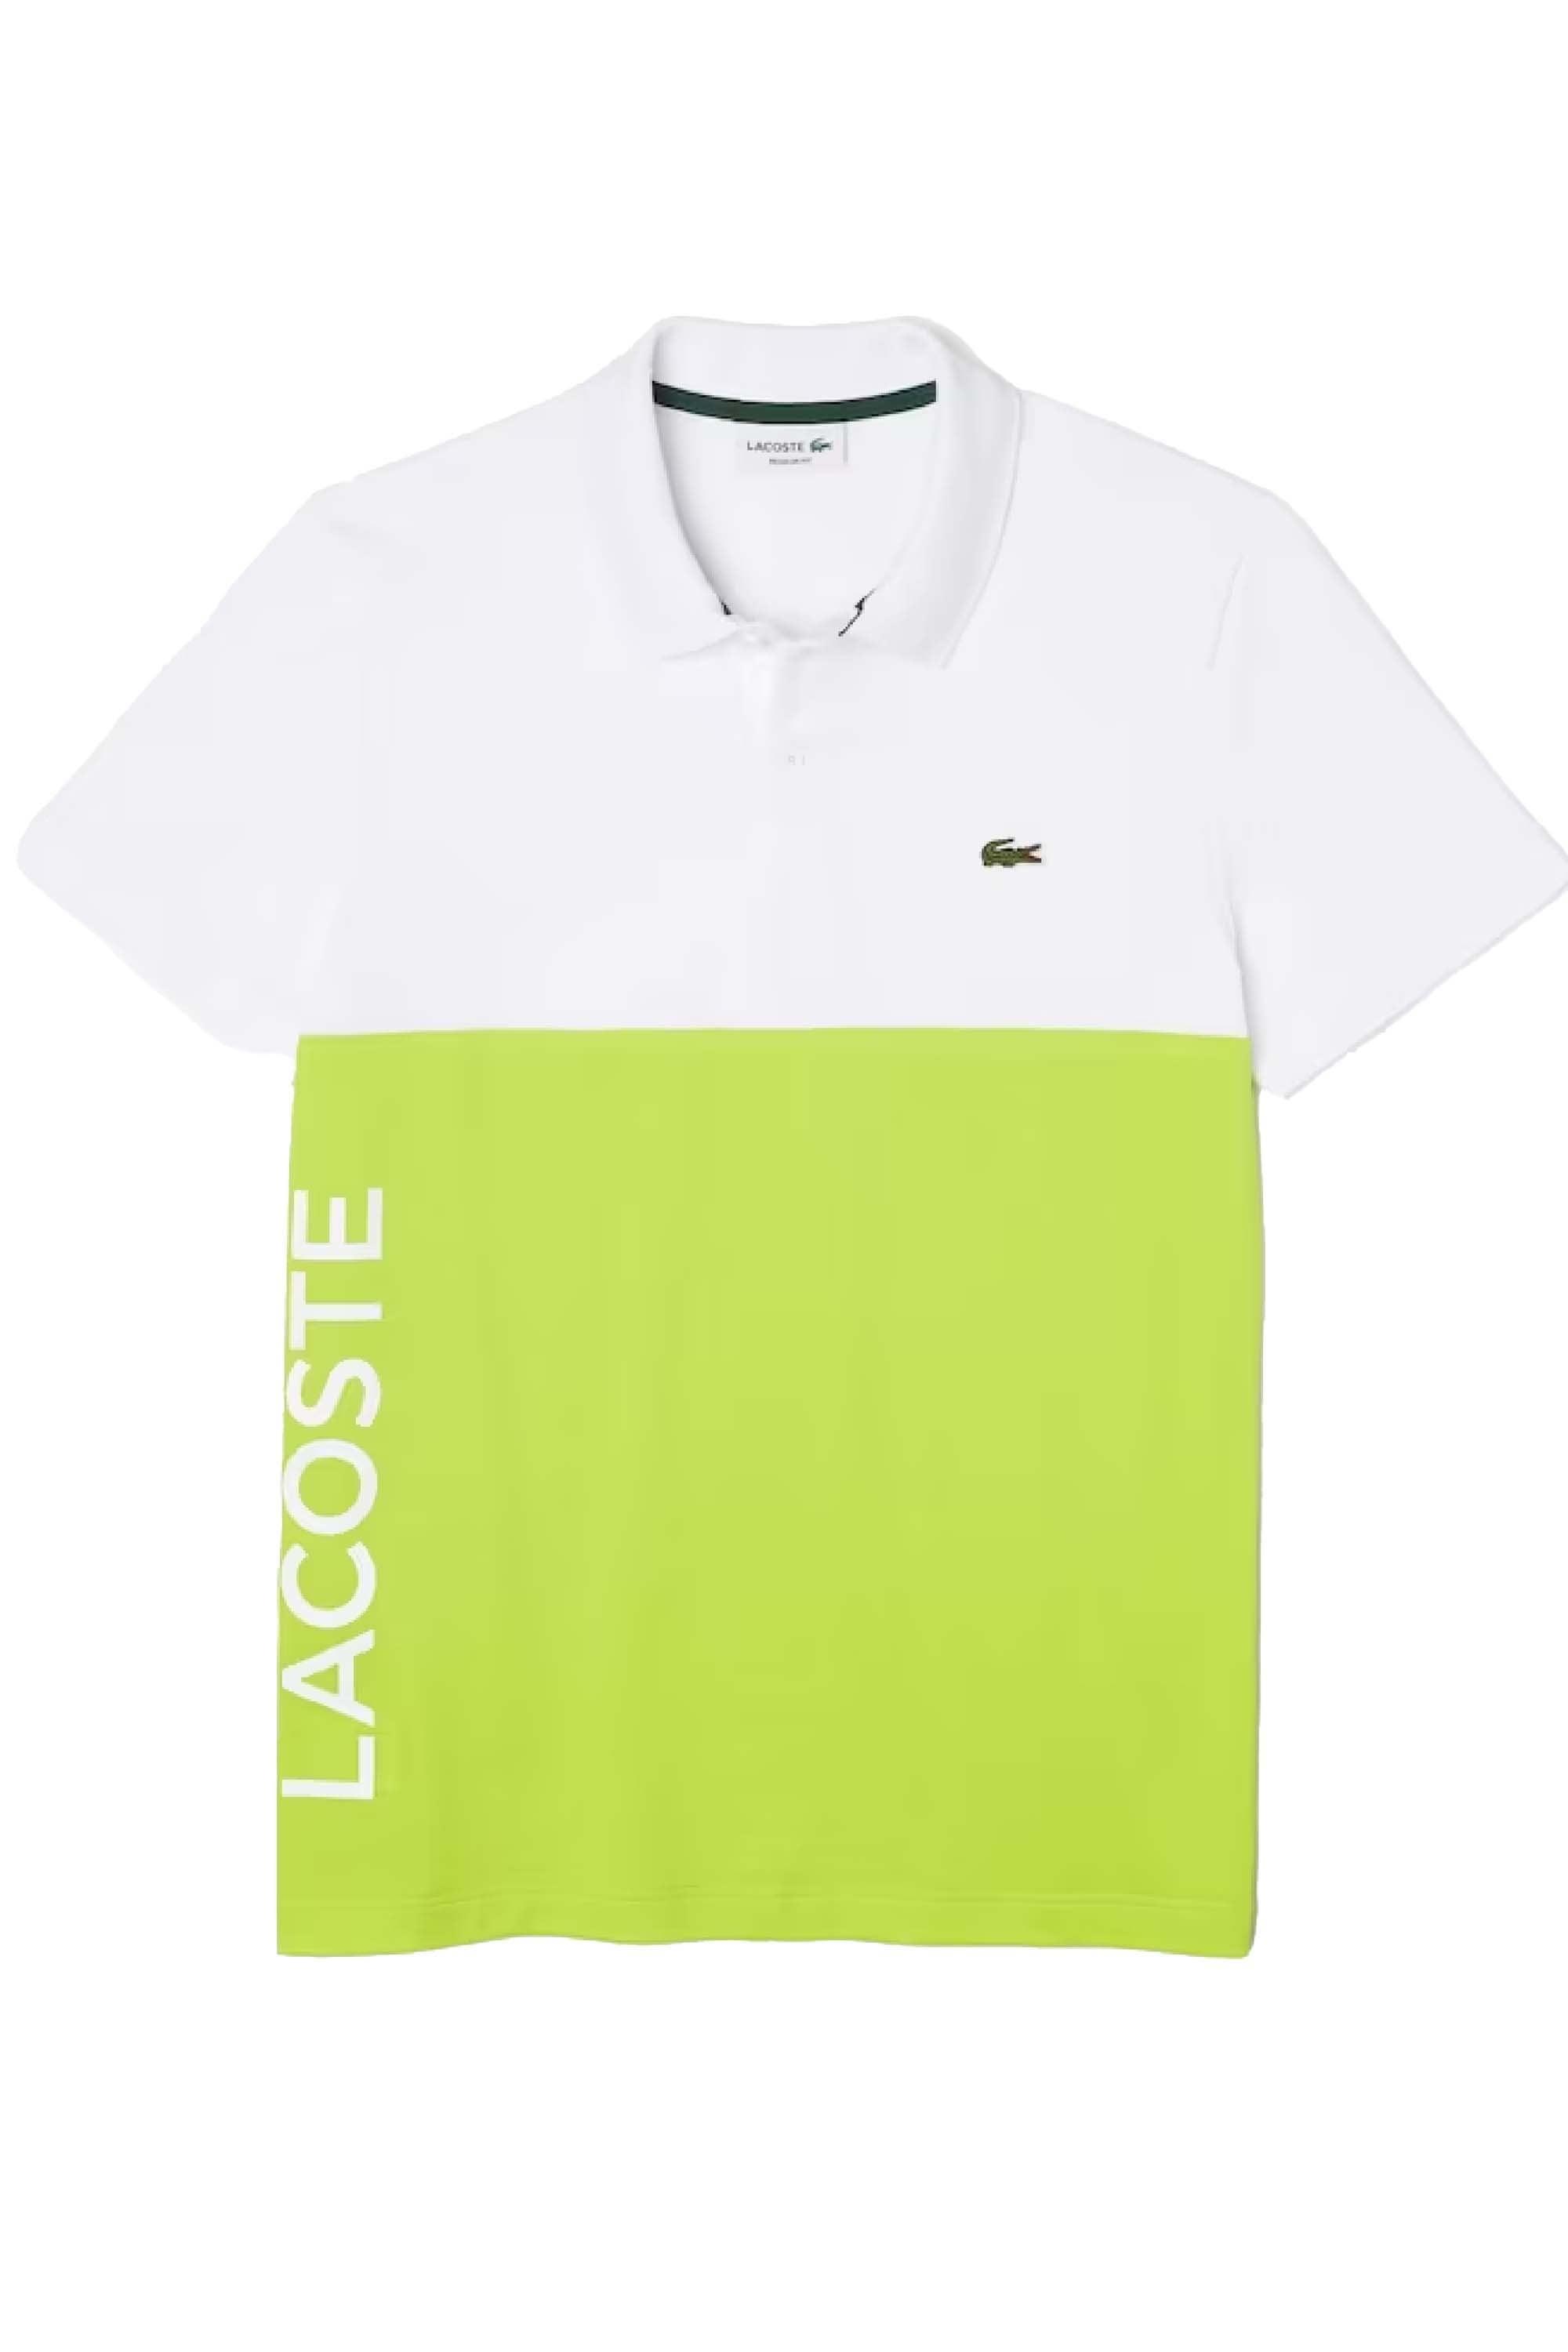 Lacoste Colour Block Polo